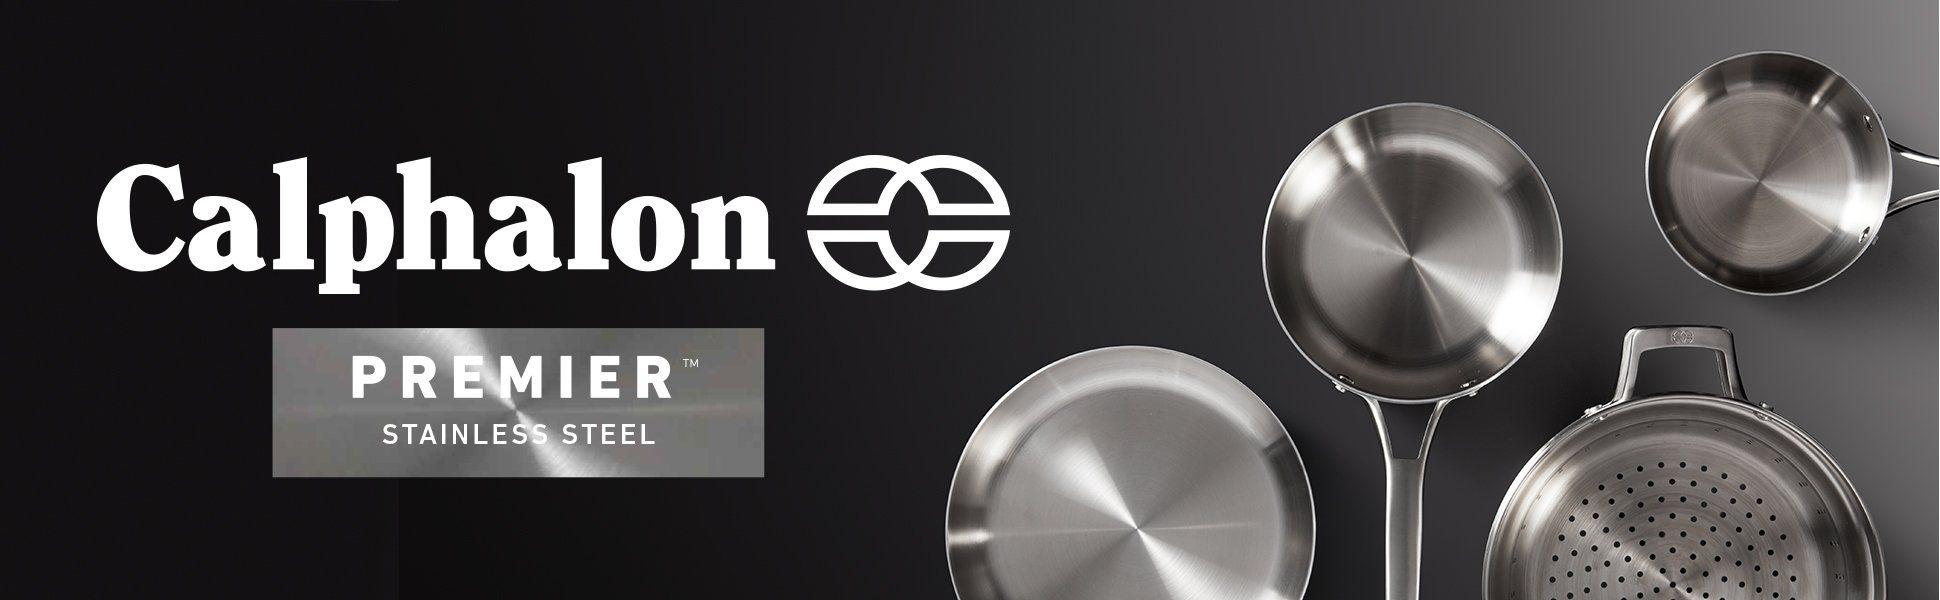 Calphalon Logo - Calphalon Premier Stainless Steel 8-Piece Cookware Set ...